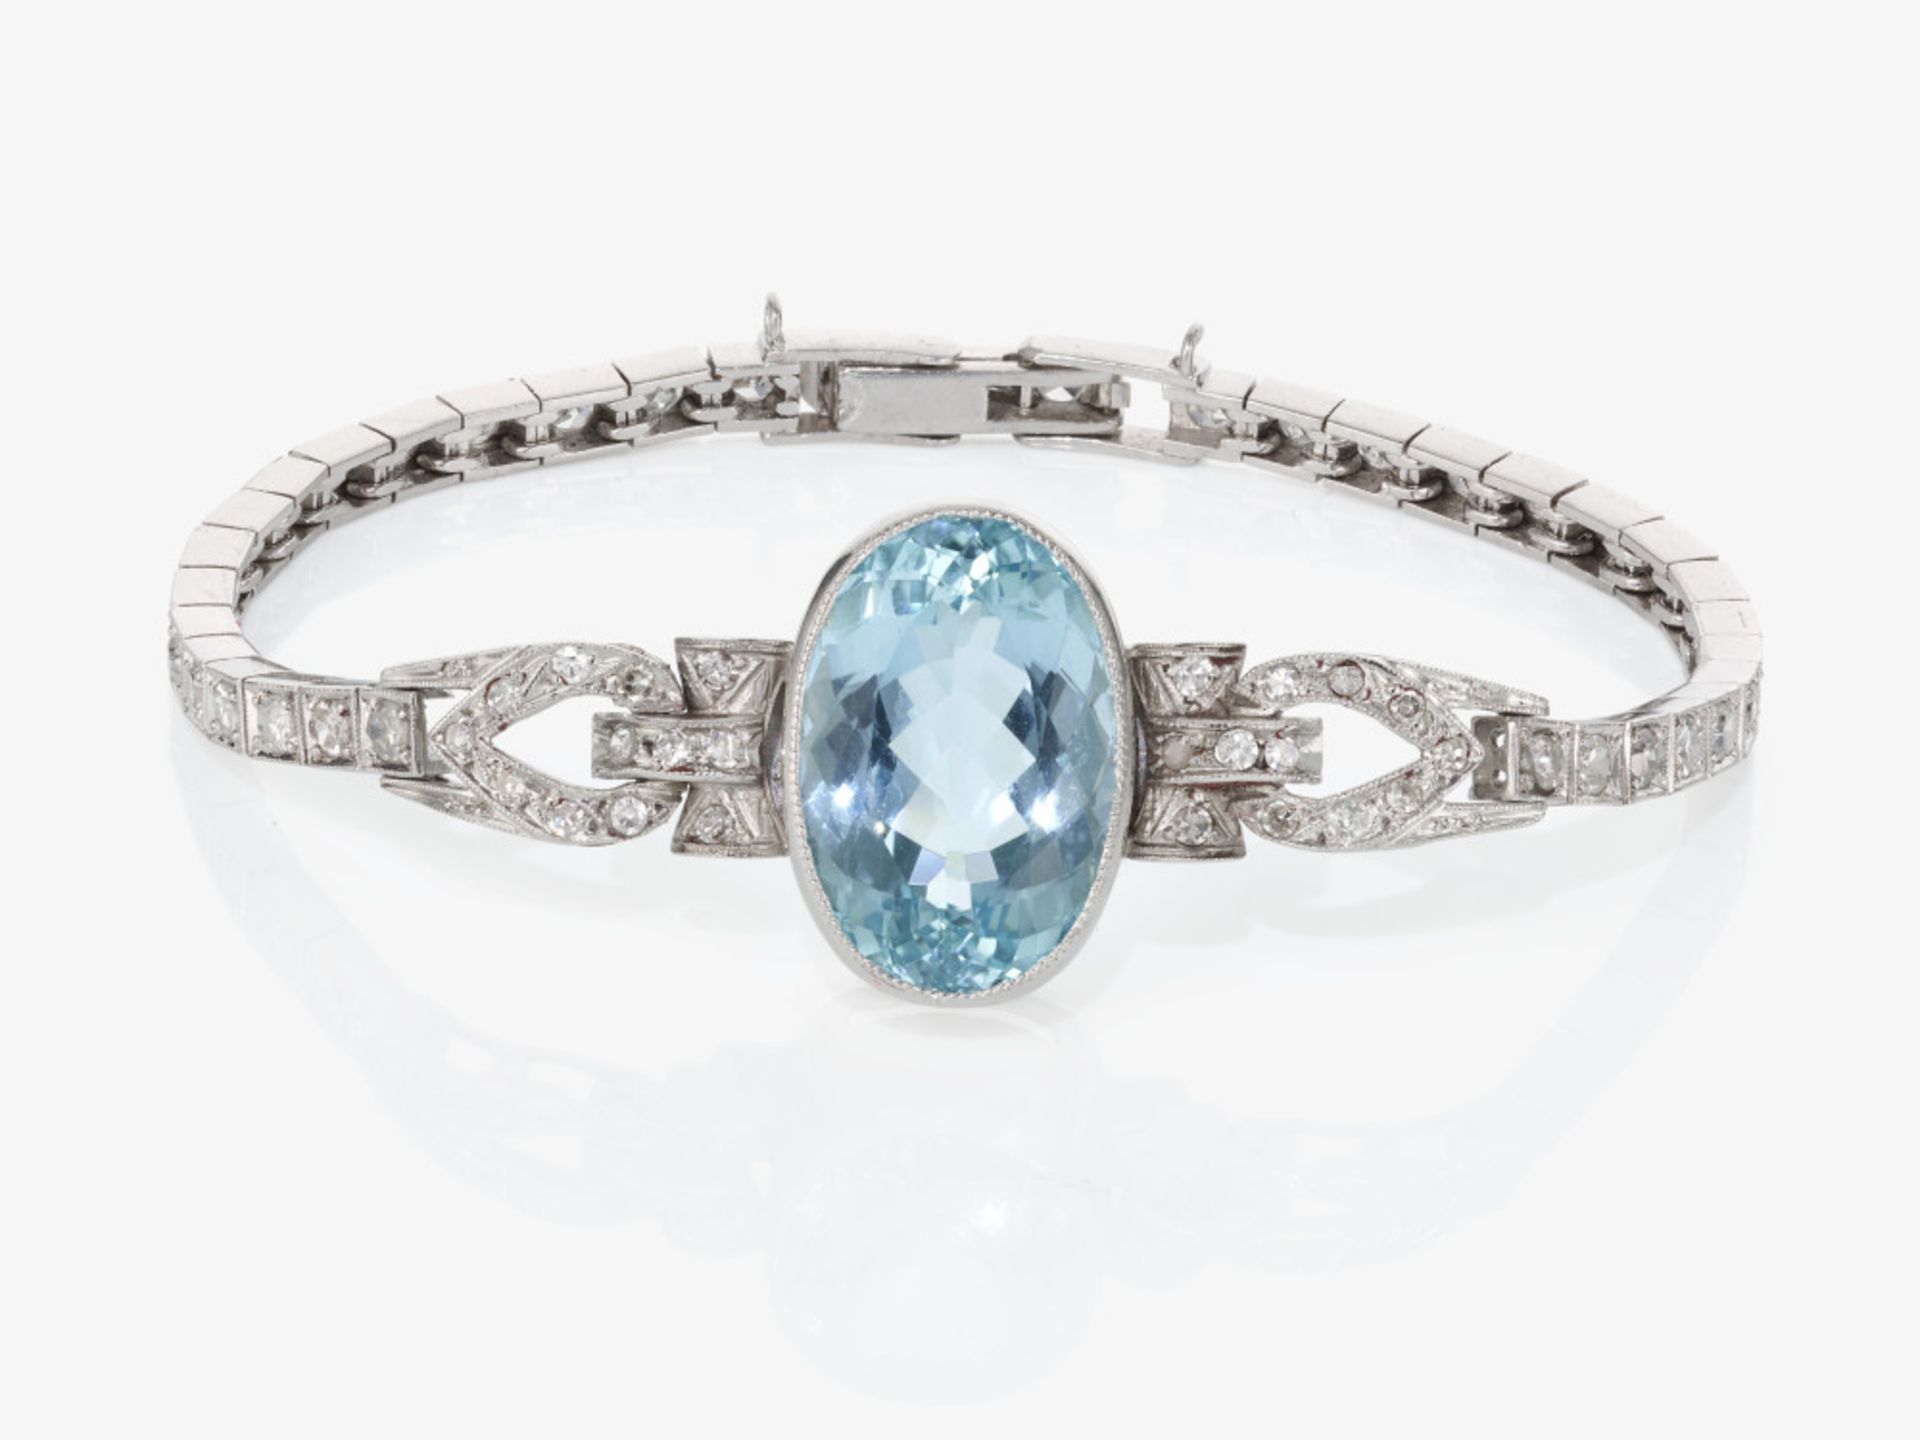 Historische Cocktail - Armband verziert mit einem azurblauen Aquamarin und Diamanten